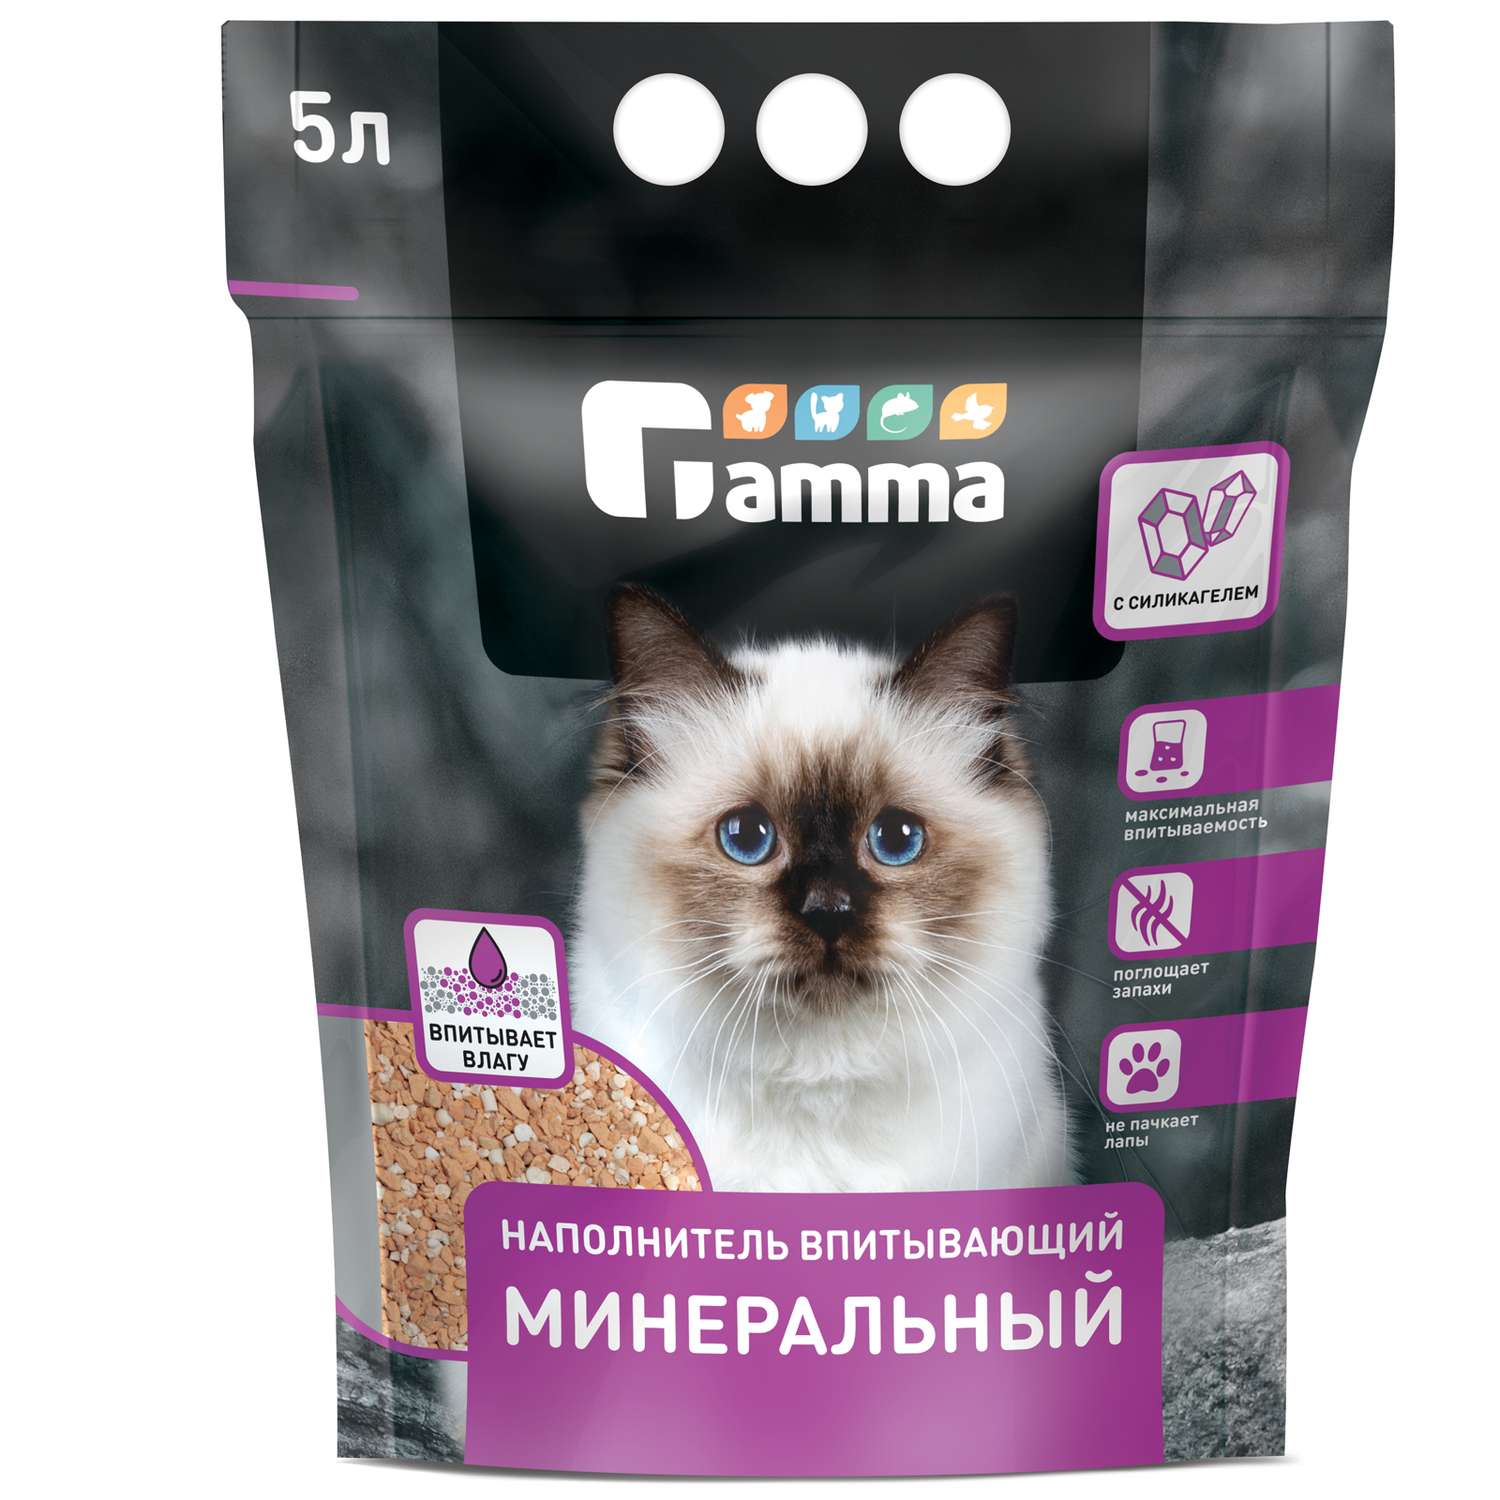 Наполнитель для кошек GAMMA минеральный впитывающий 5л - фото 1